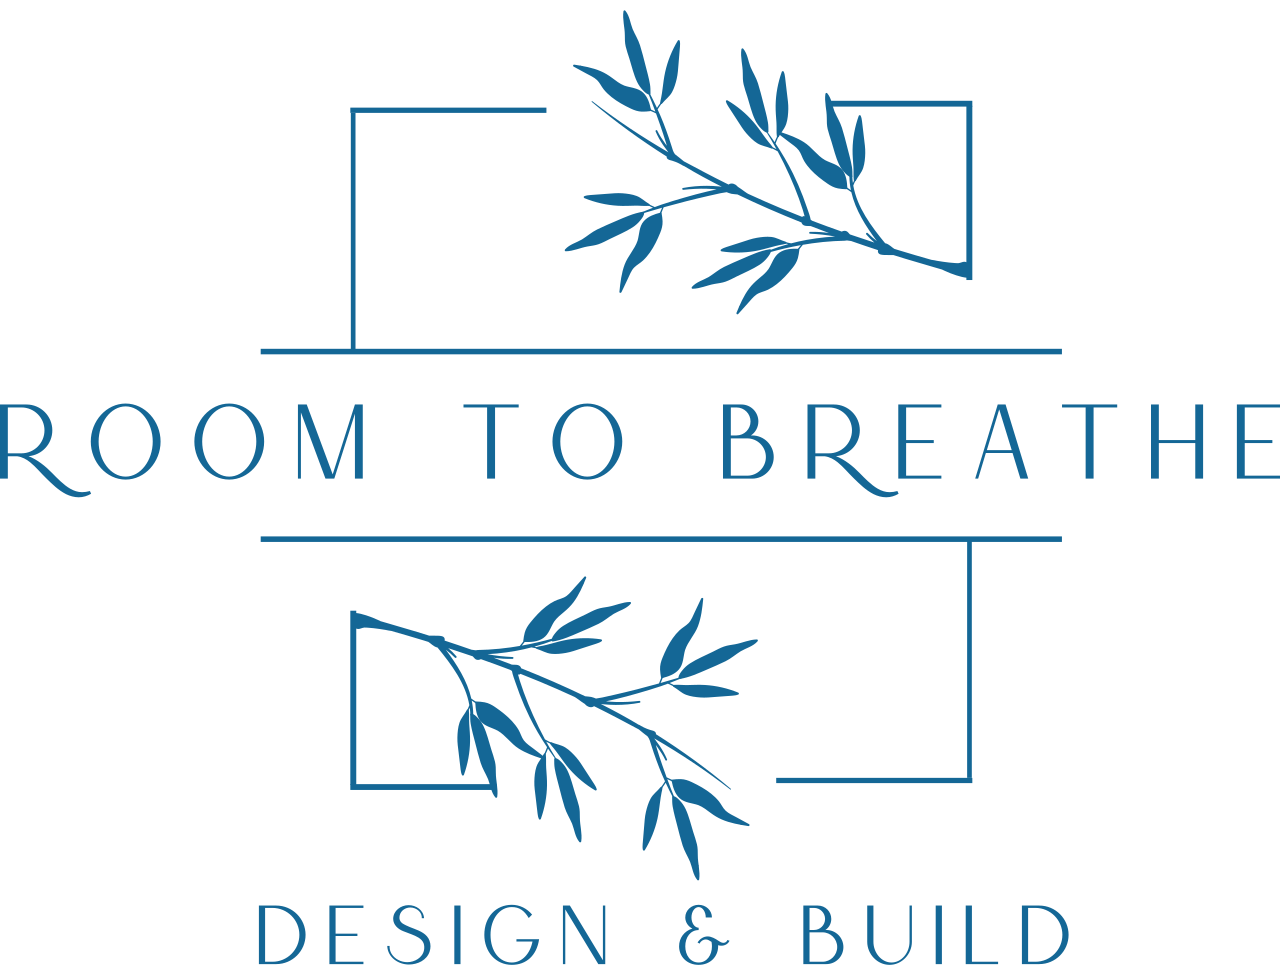 Room to Breathe 's logo